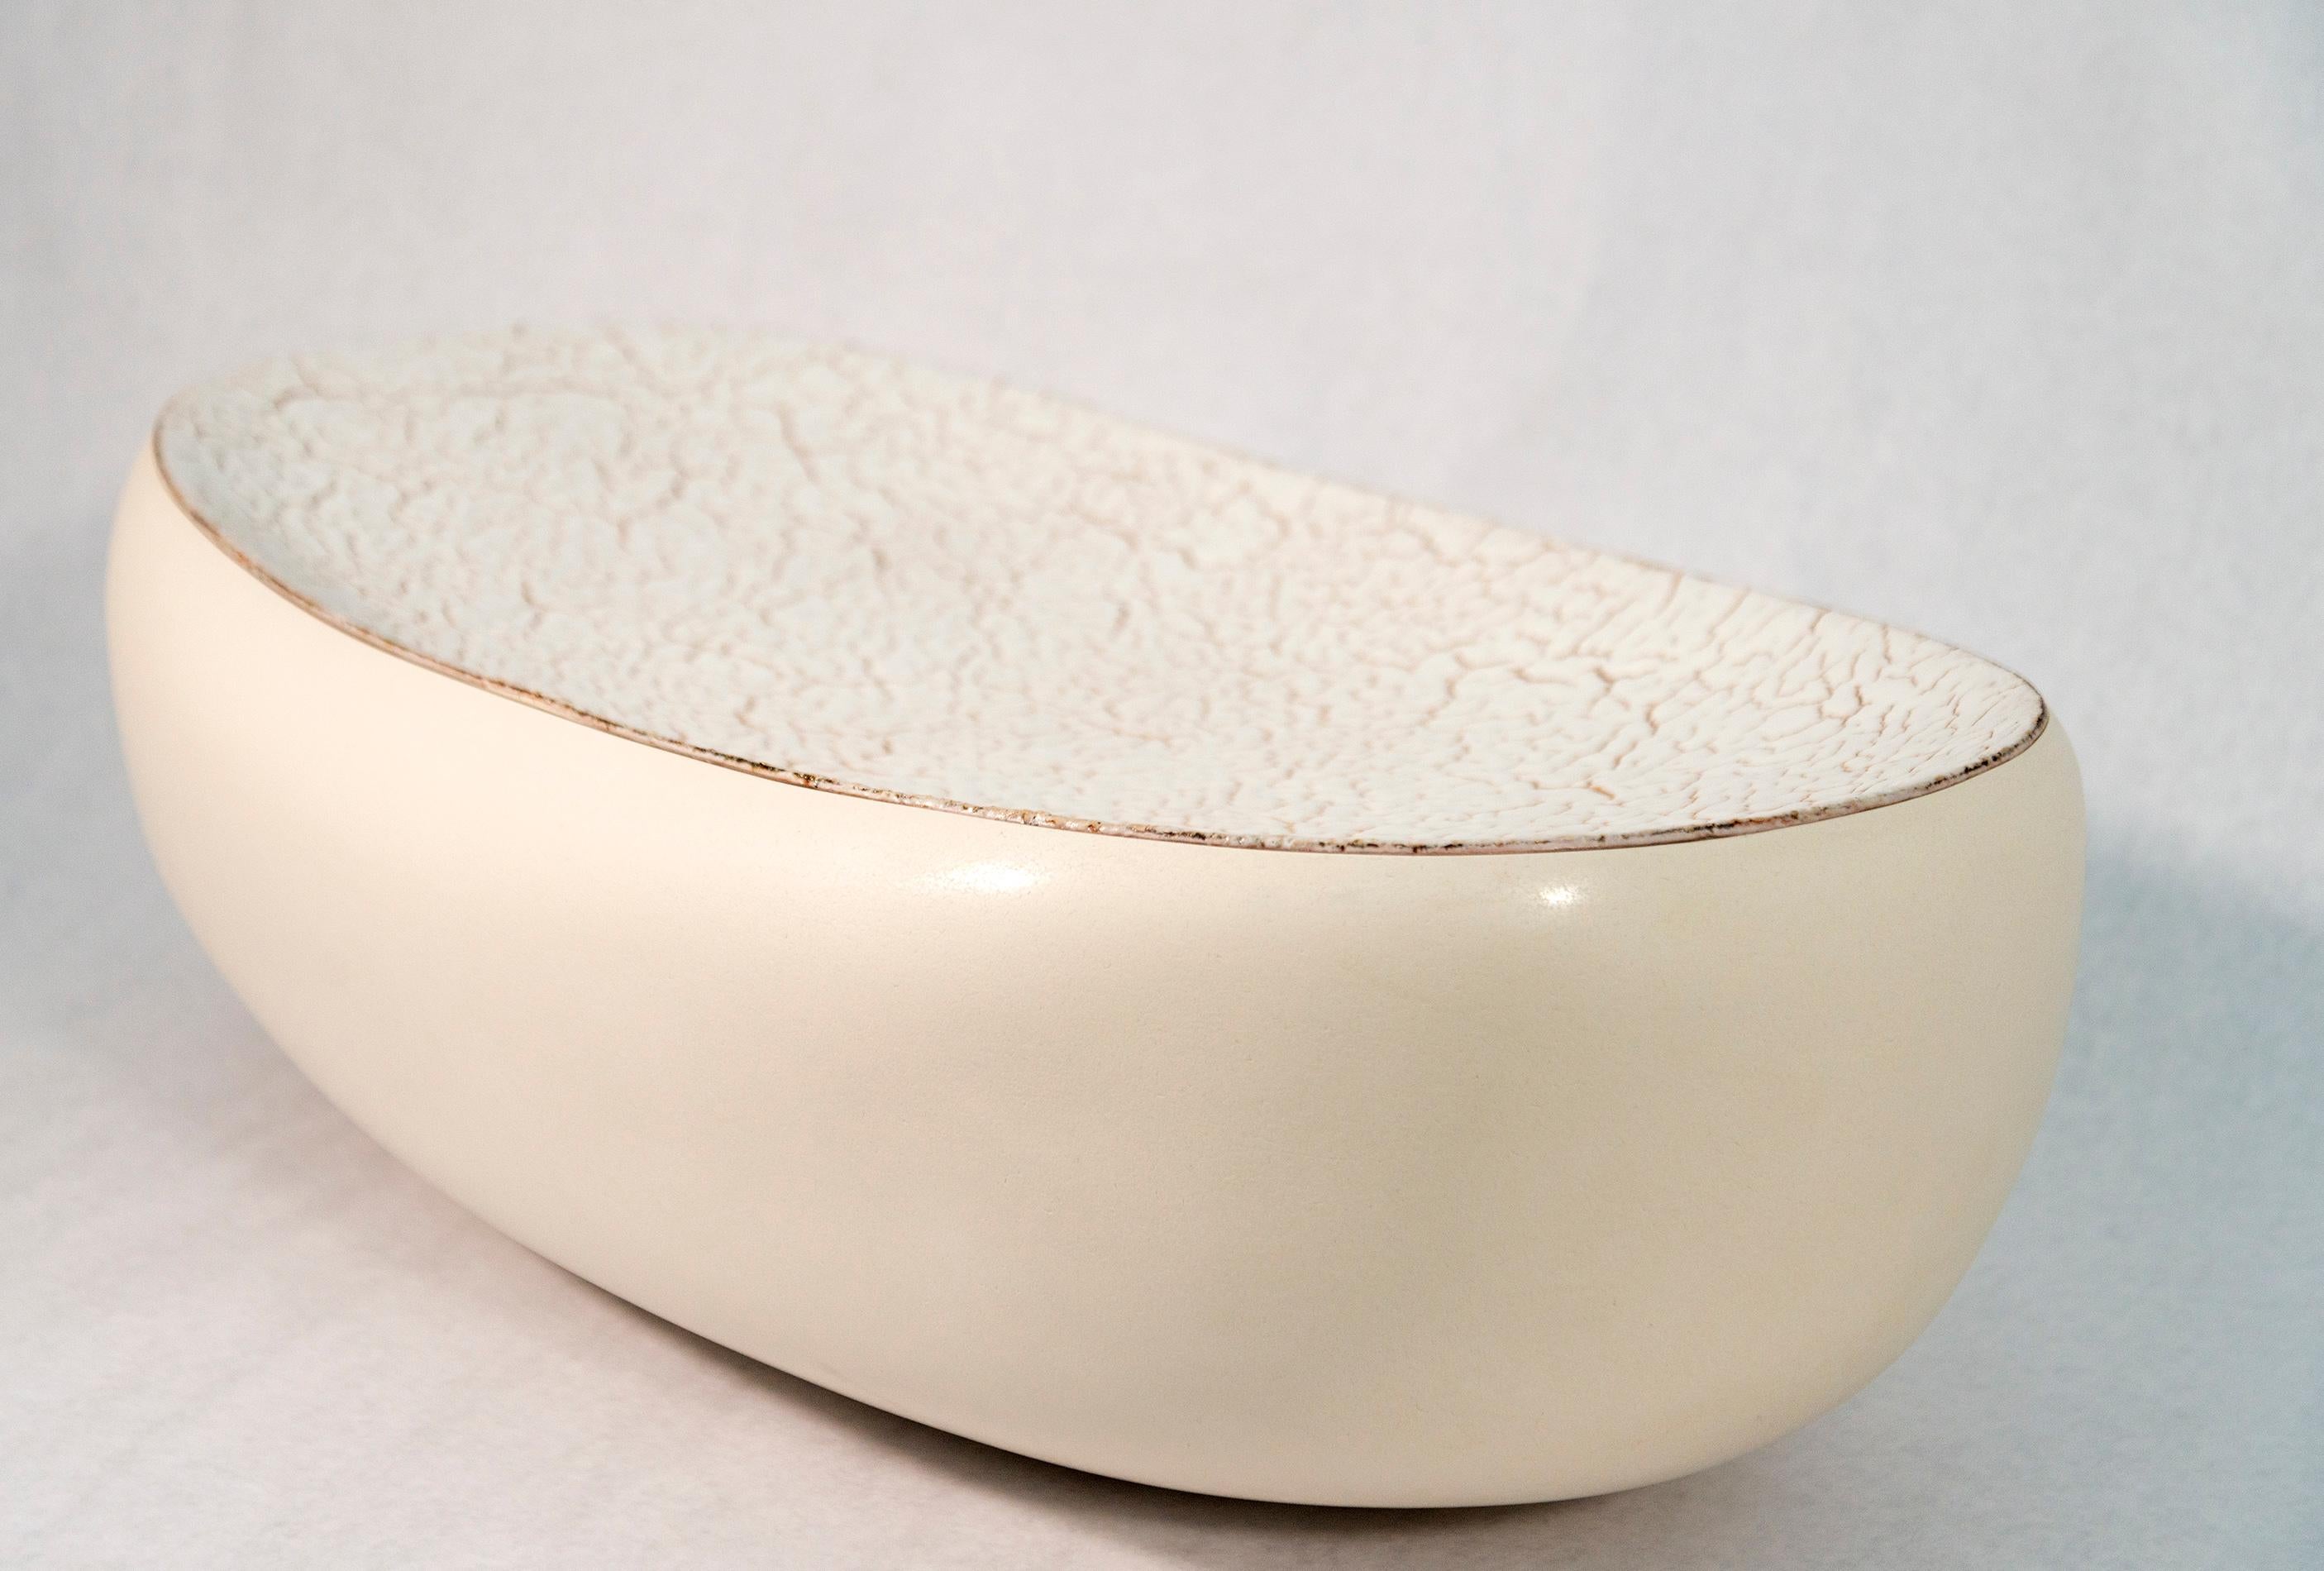 Ellesmere - creamy white, textured, elongated, ceramic art object - Sculpture by Steven Heinemann